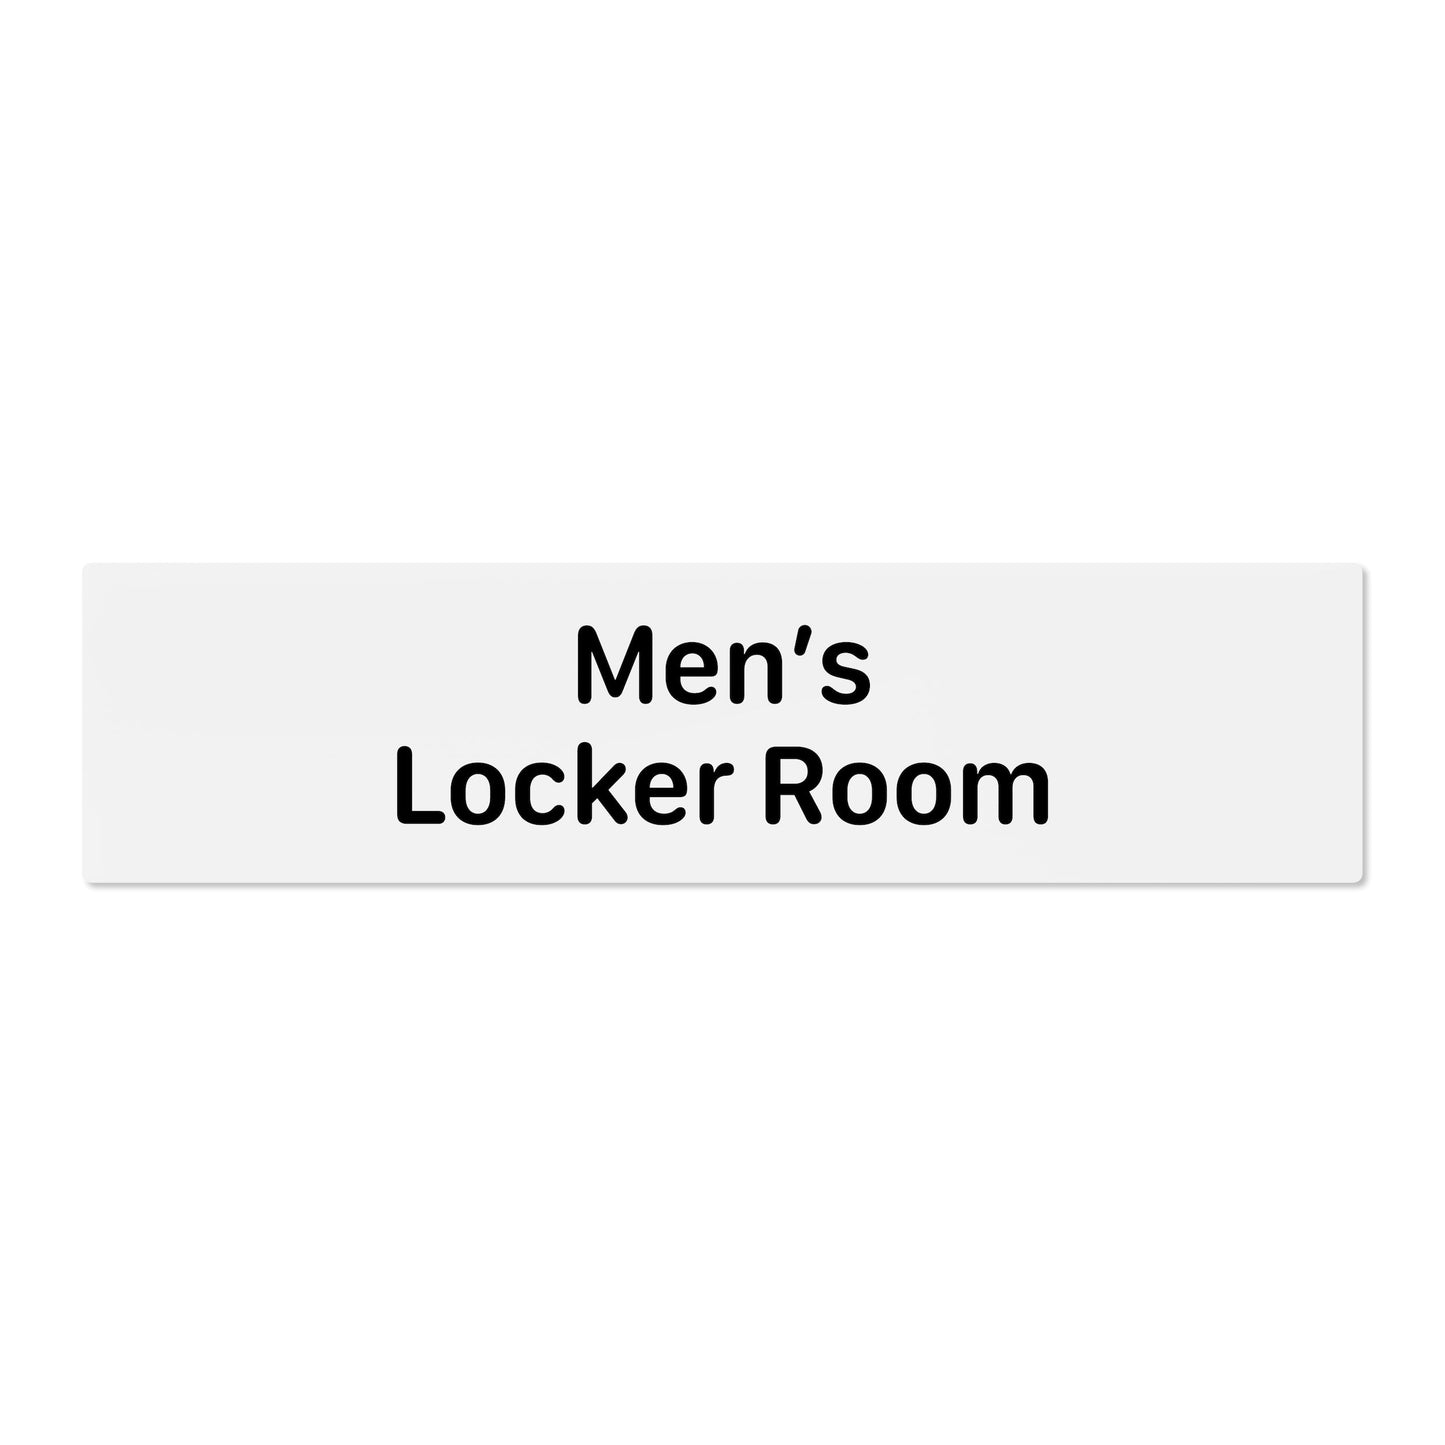 Men’s Locker Room